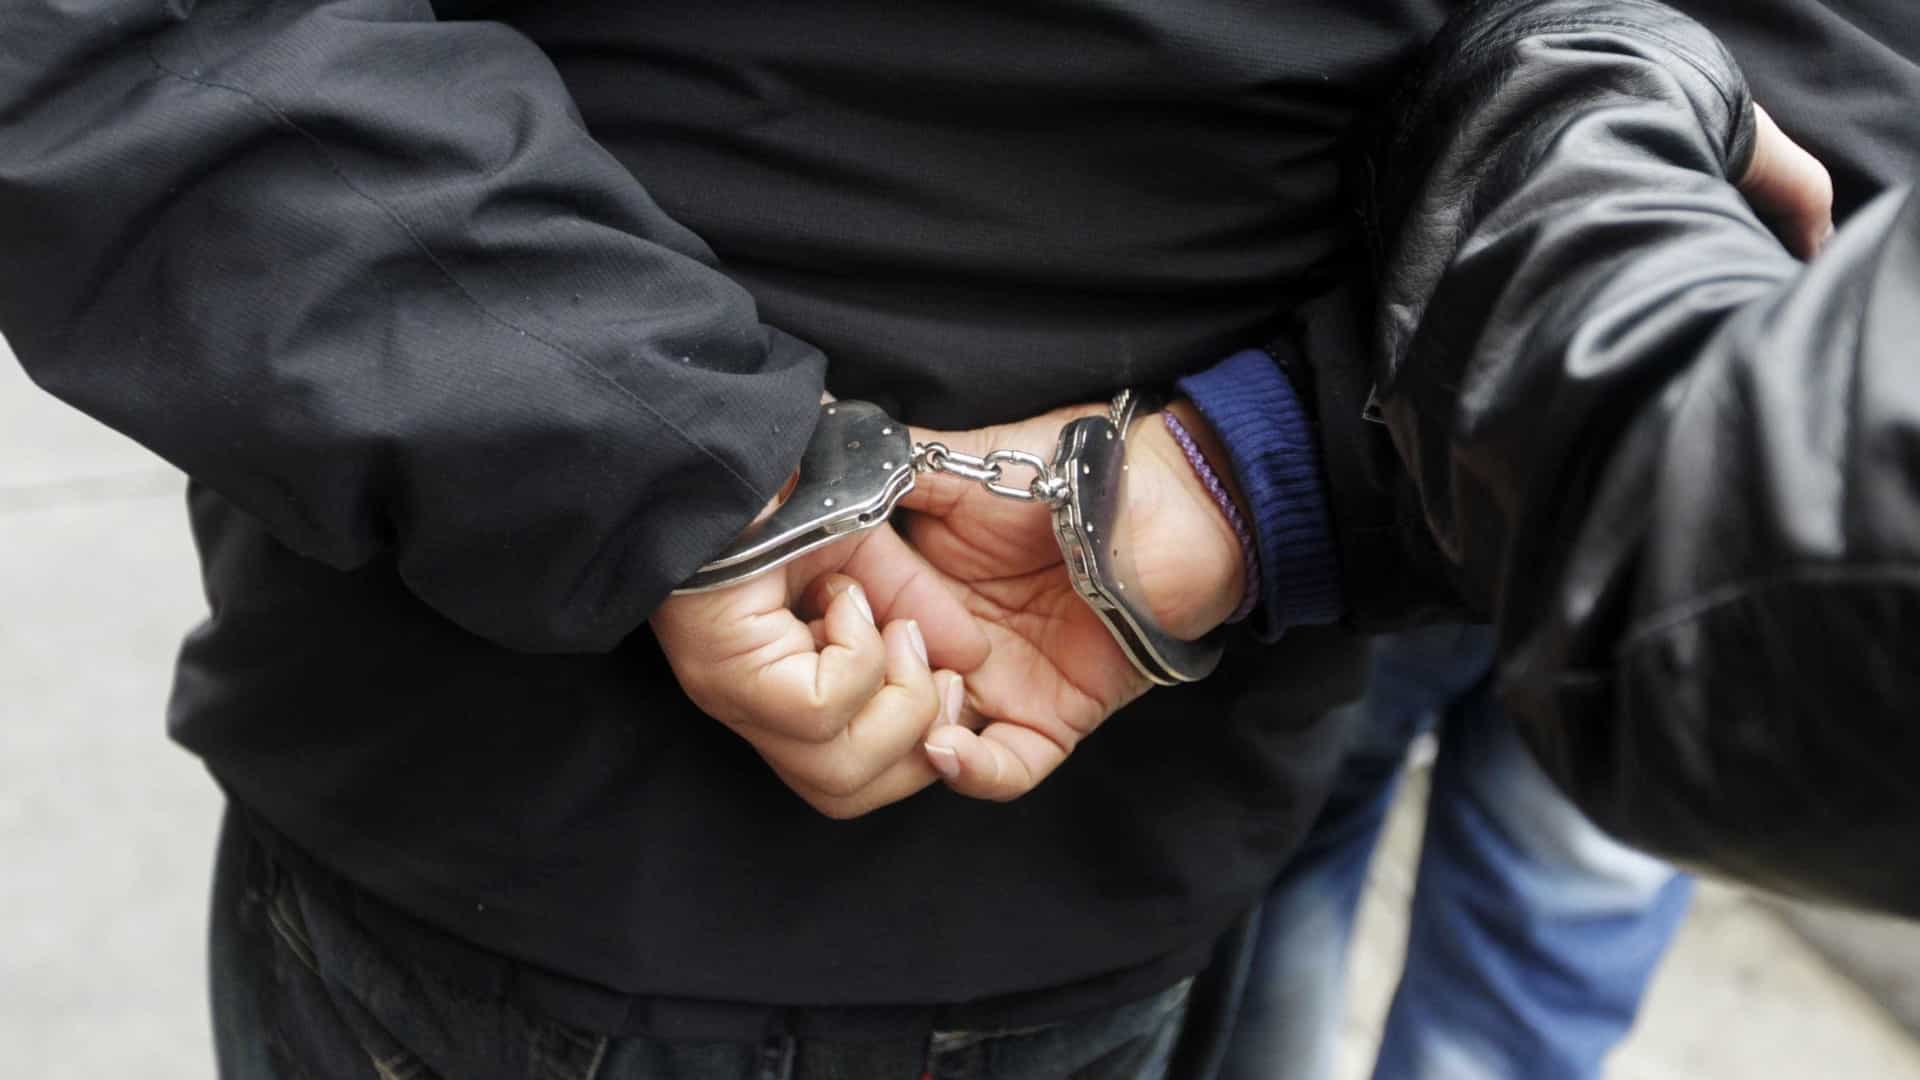 detidos dois homens nos açores suspeitos de tráfico de droga em lagoa